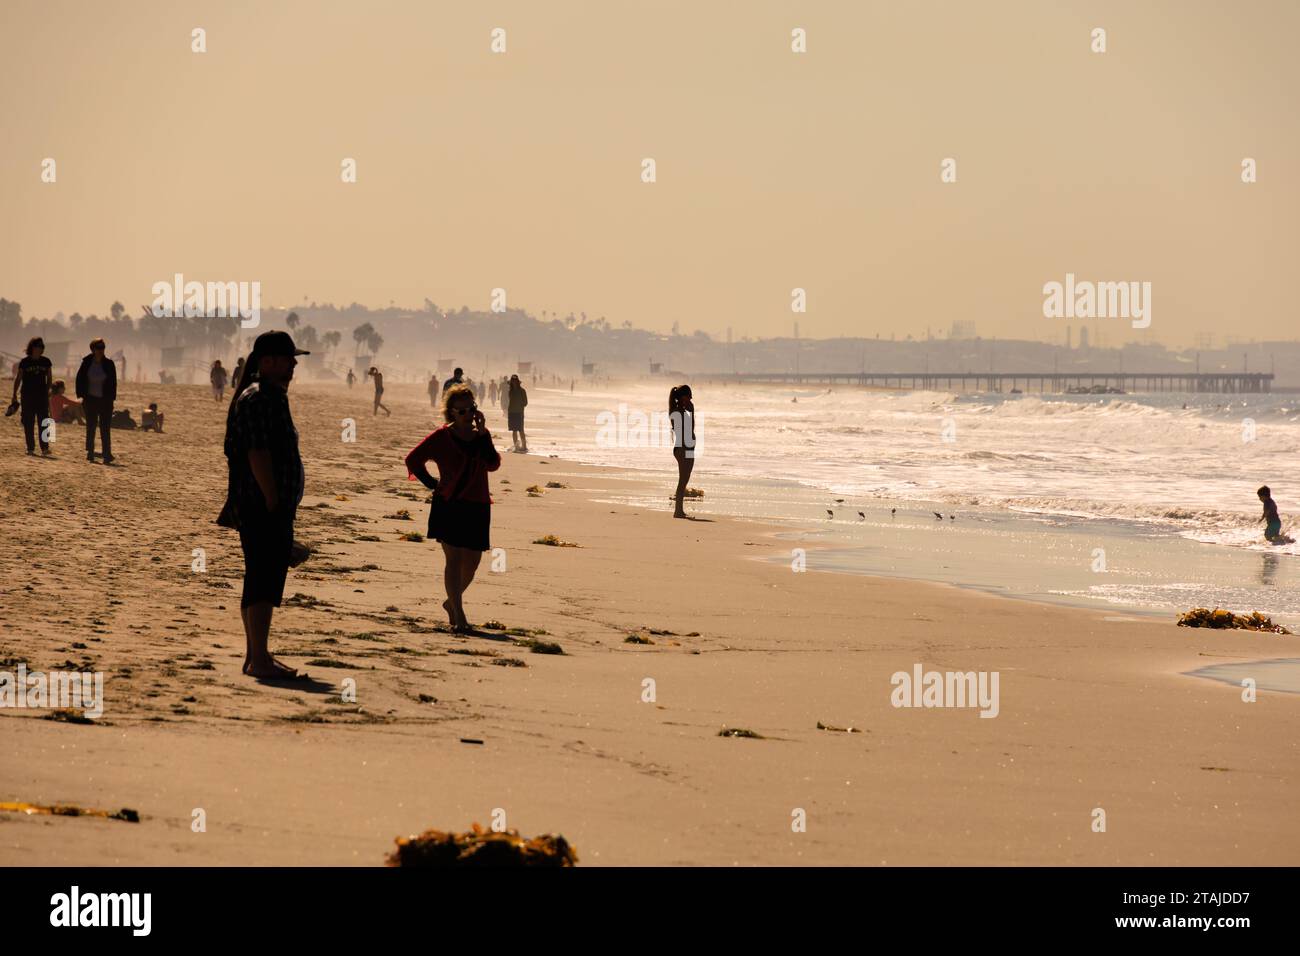 Silhouetten von Menschen, die am Strand stehen, wenn die Sonne untergeht. Santa Monica, Kalifornien, Vereinigte Staaten von amerika. USA. Oktober 2019 Stockfoto